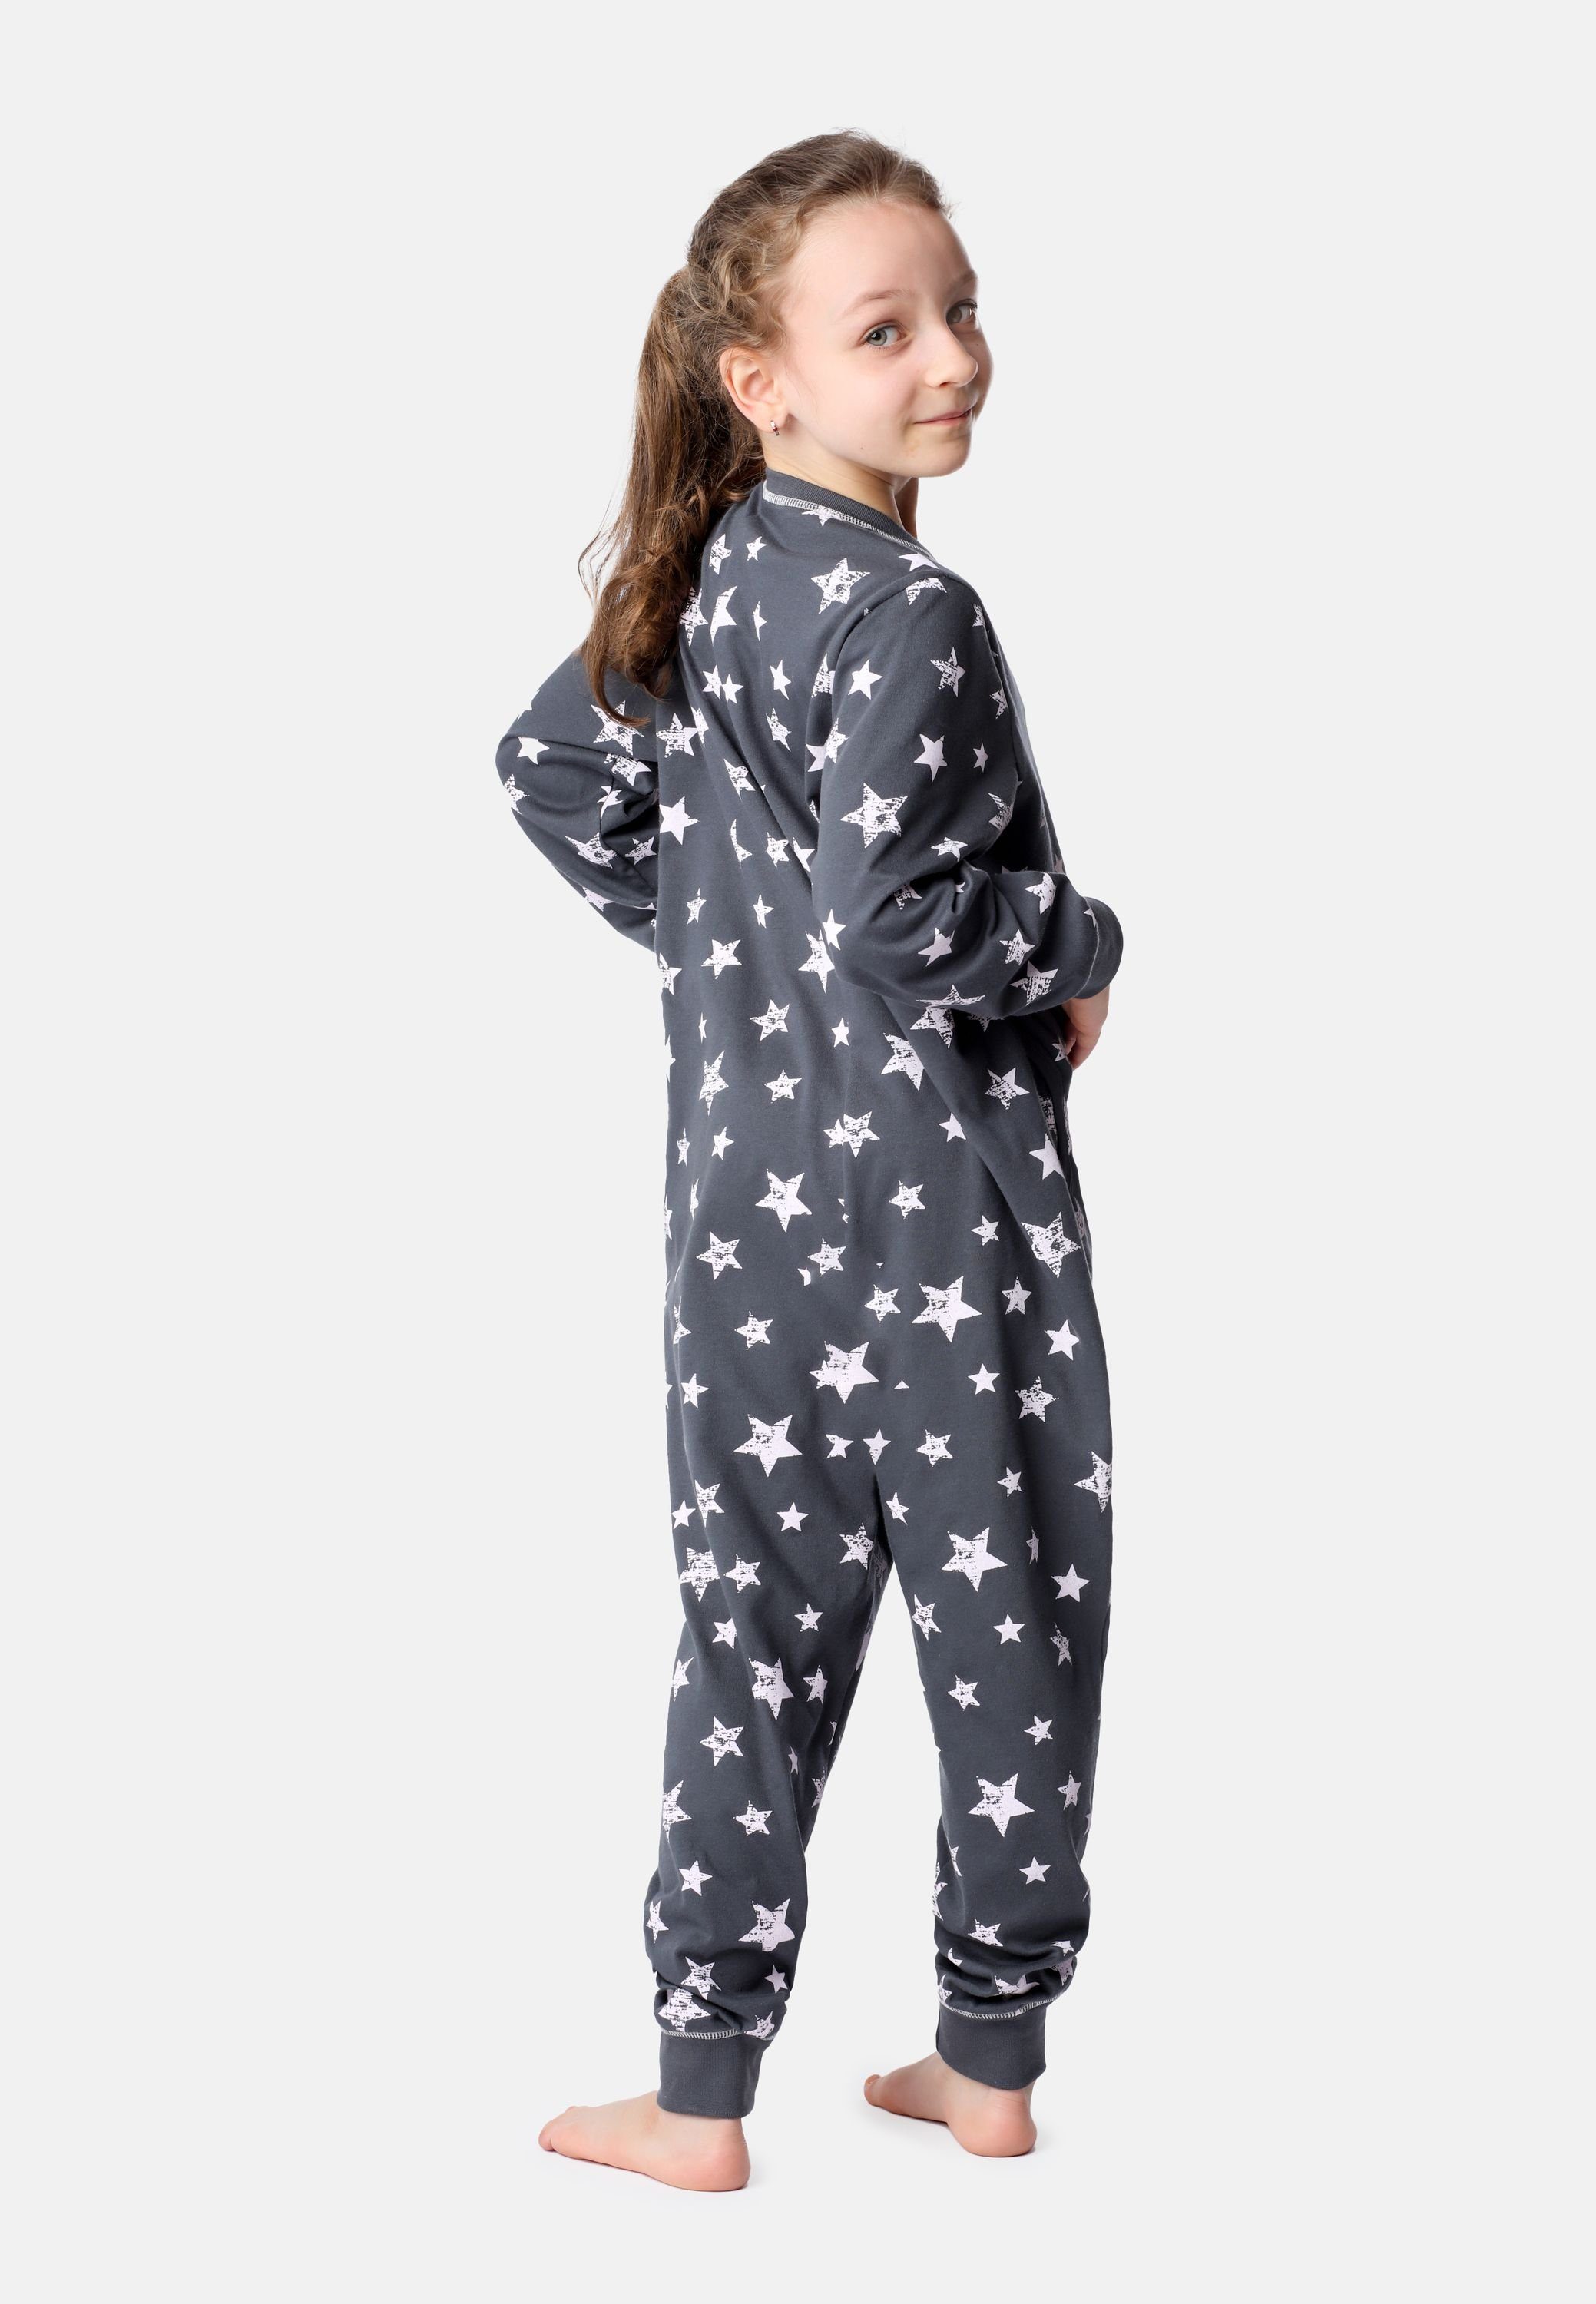 MS10-186 Jumpsuit Schlafanzug Schlafanzug Rosa Grau Style Sterne Merry Mädchen